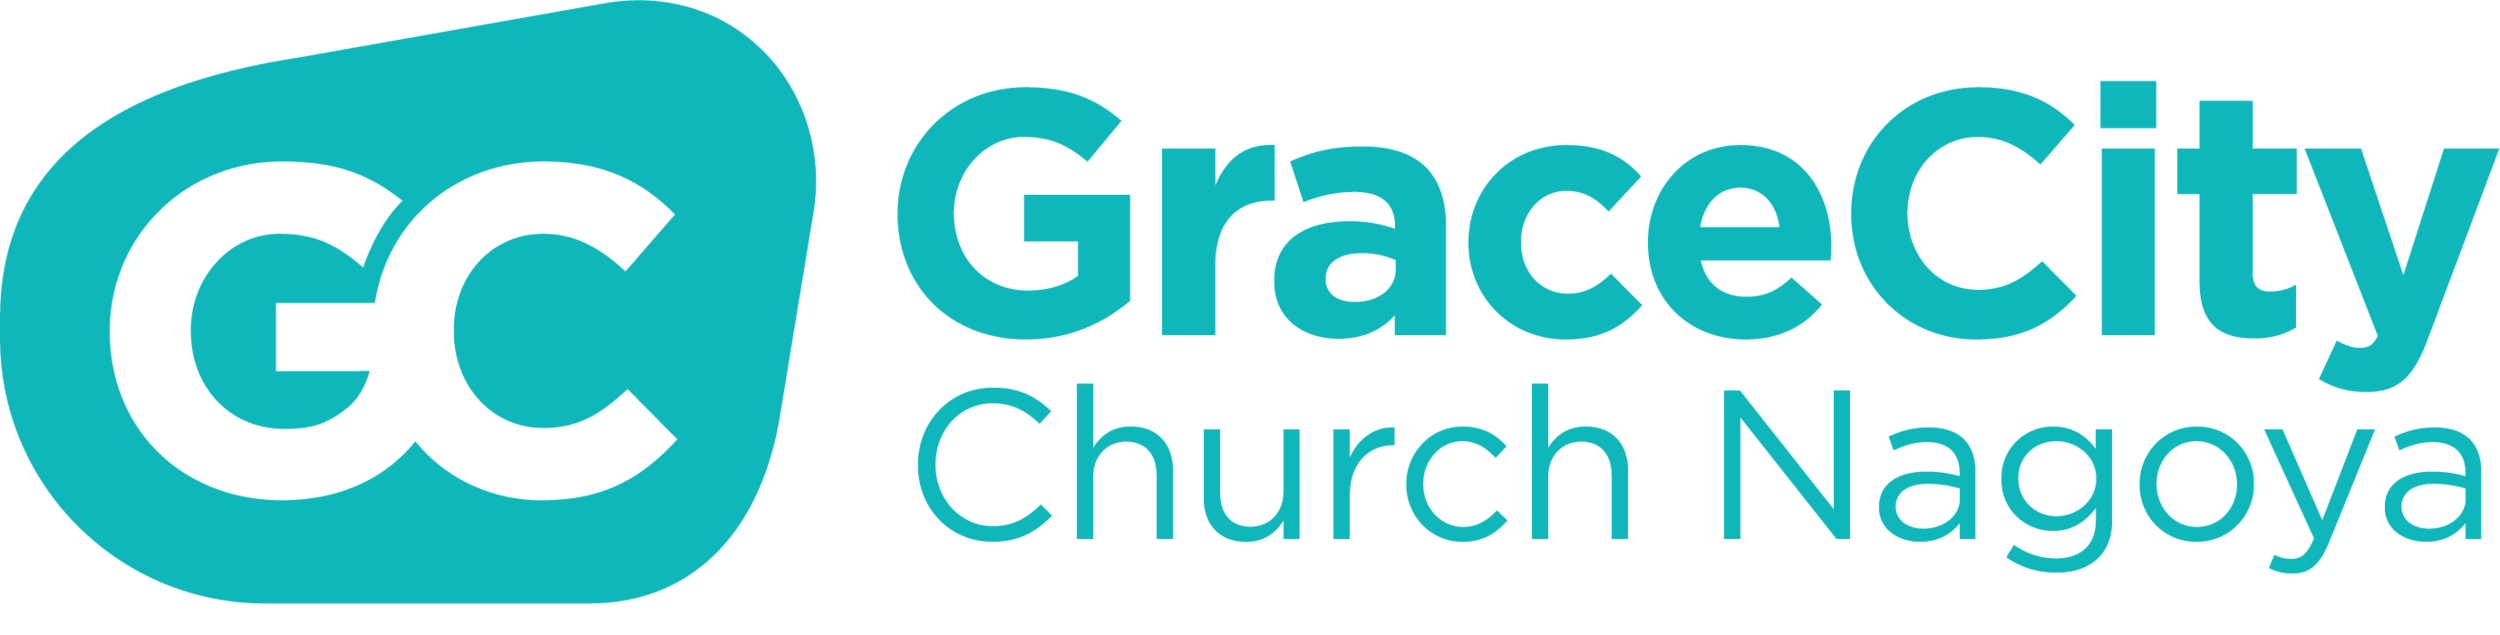 GraceCity Church Nagoya